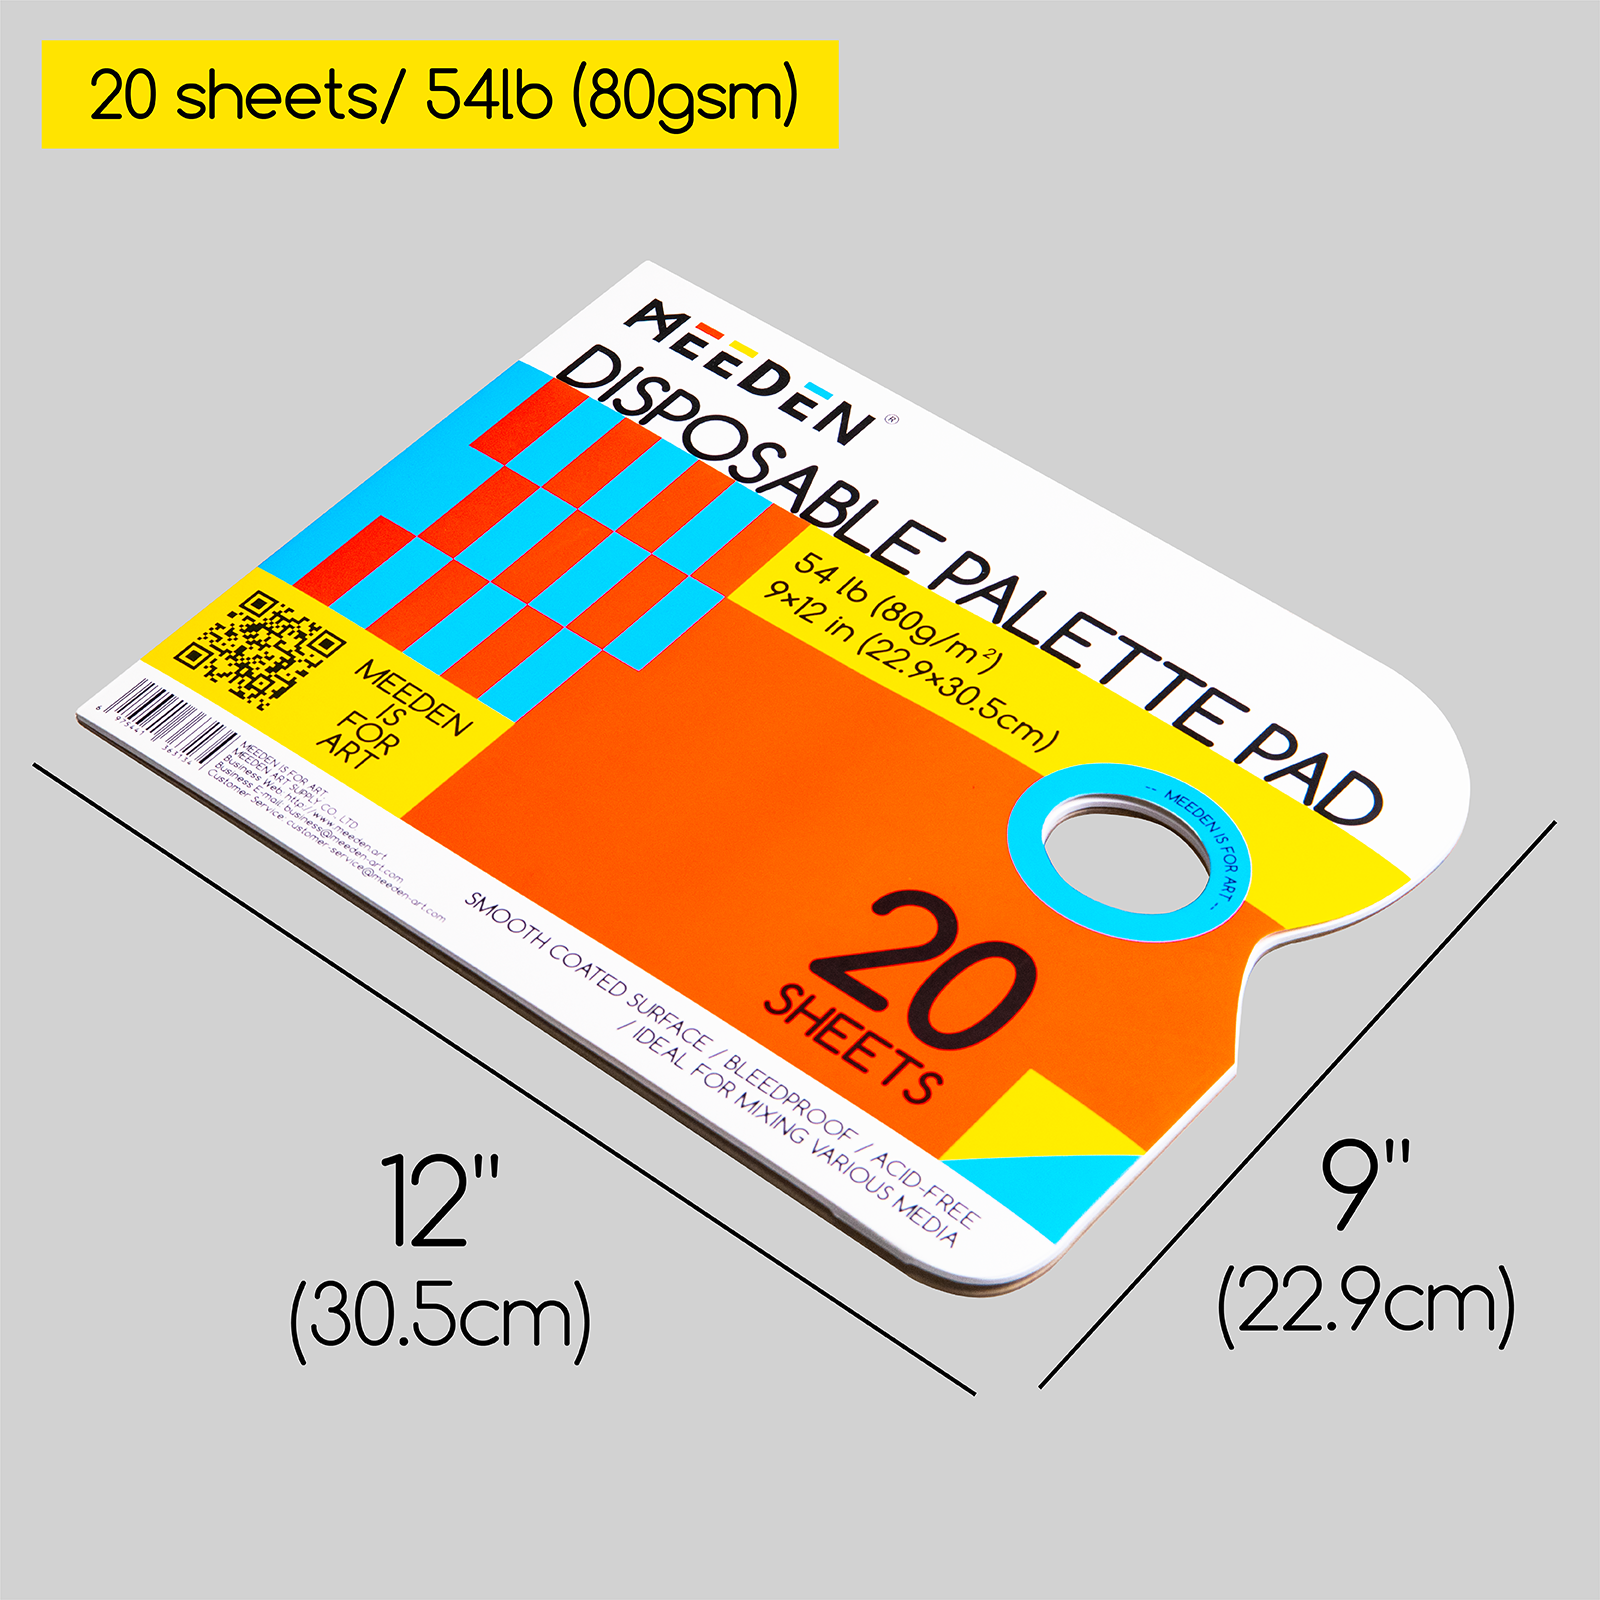 MEEDEN 9x12 Palette Paper Pad, Disposable Palette Paper, Artist Palette  Pad, 20 Sheets, 2 Pack 